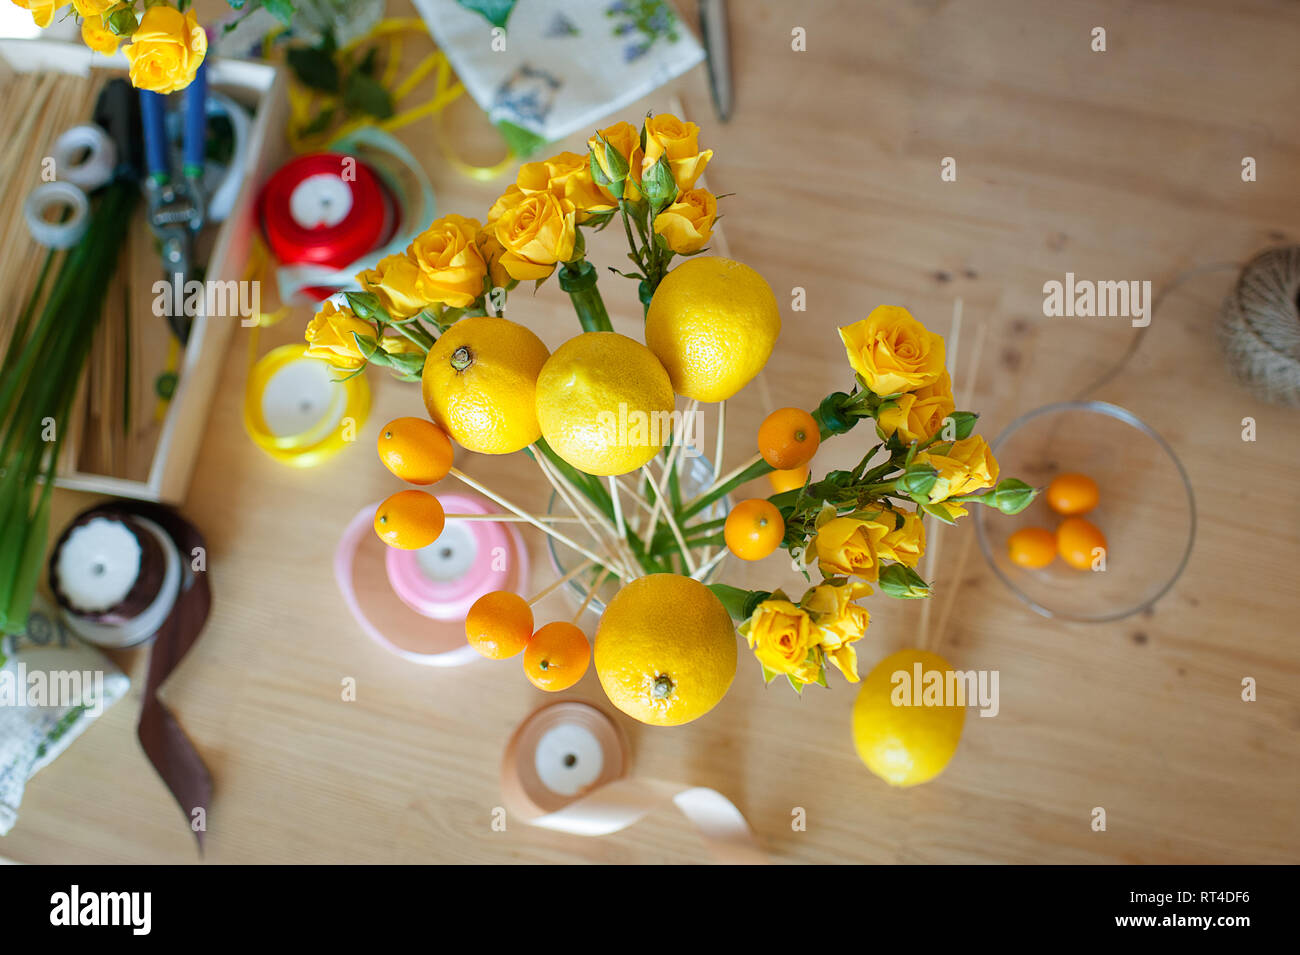 Concepto de negocio pequeño. Proceso de trabajo de florista. bouquet de frutas y flores. Foto de stock